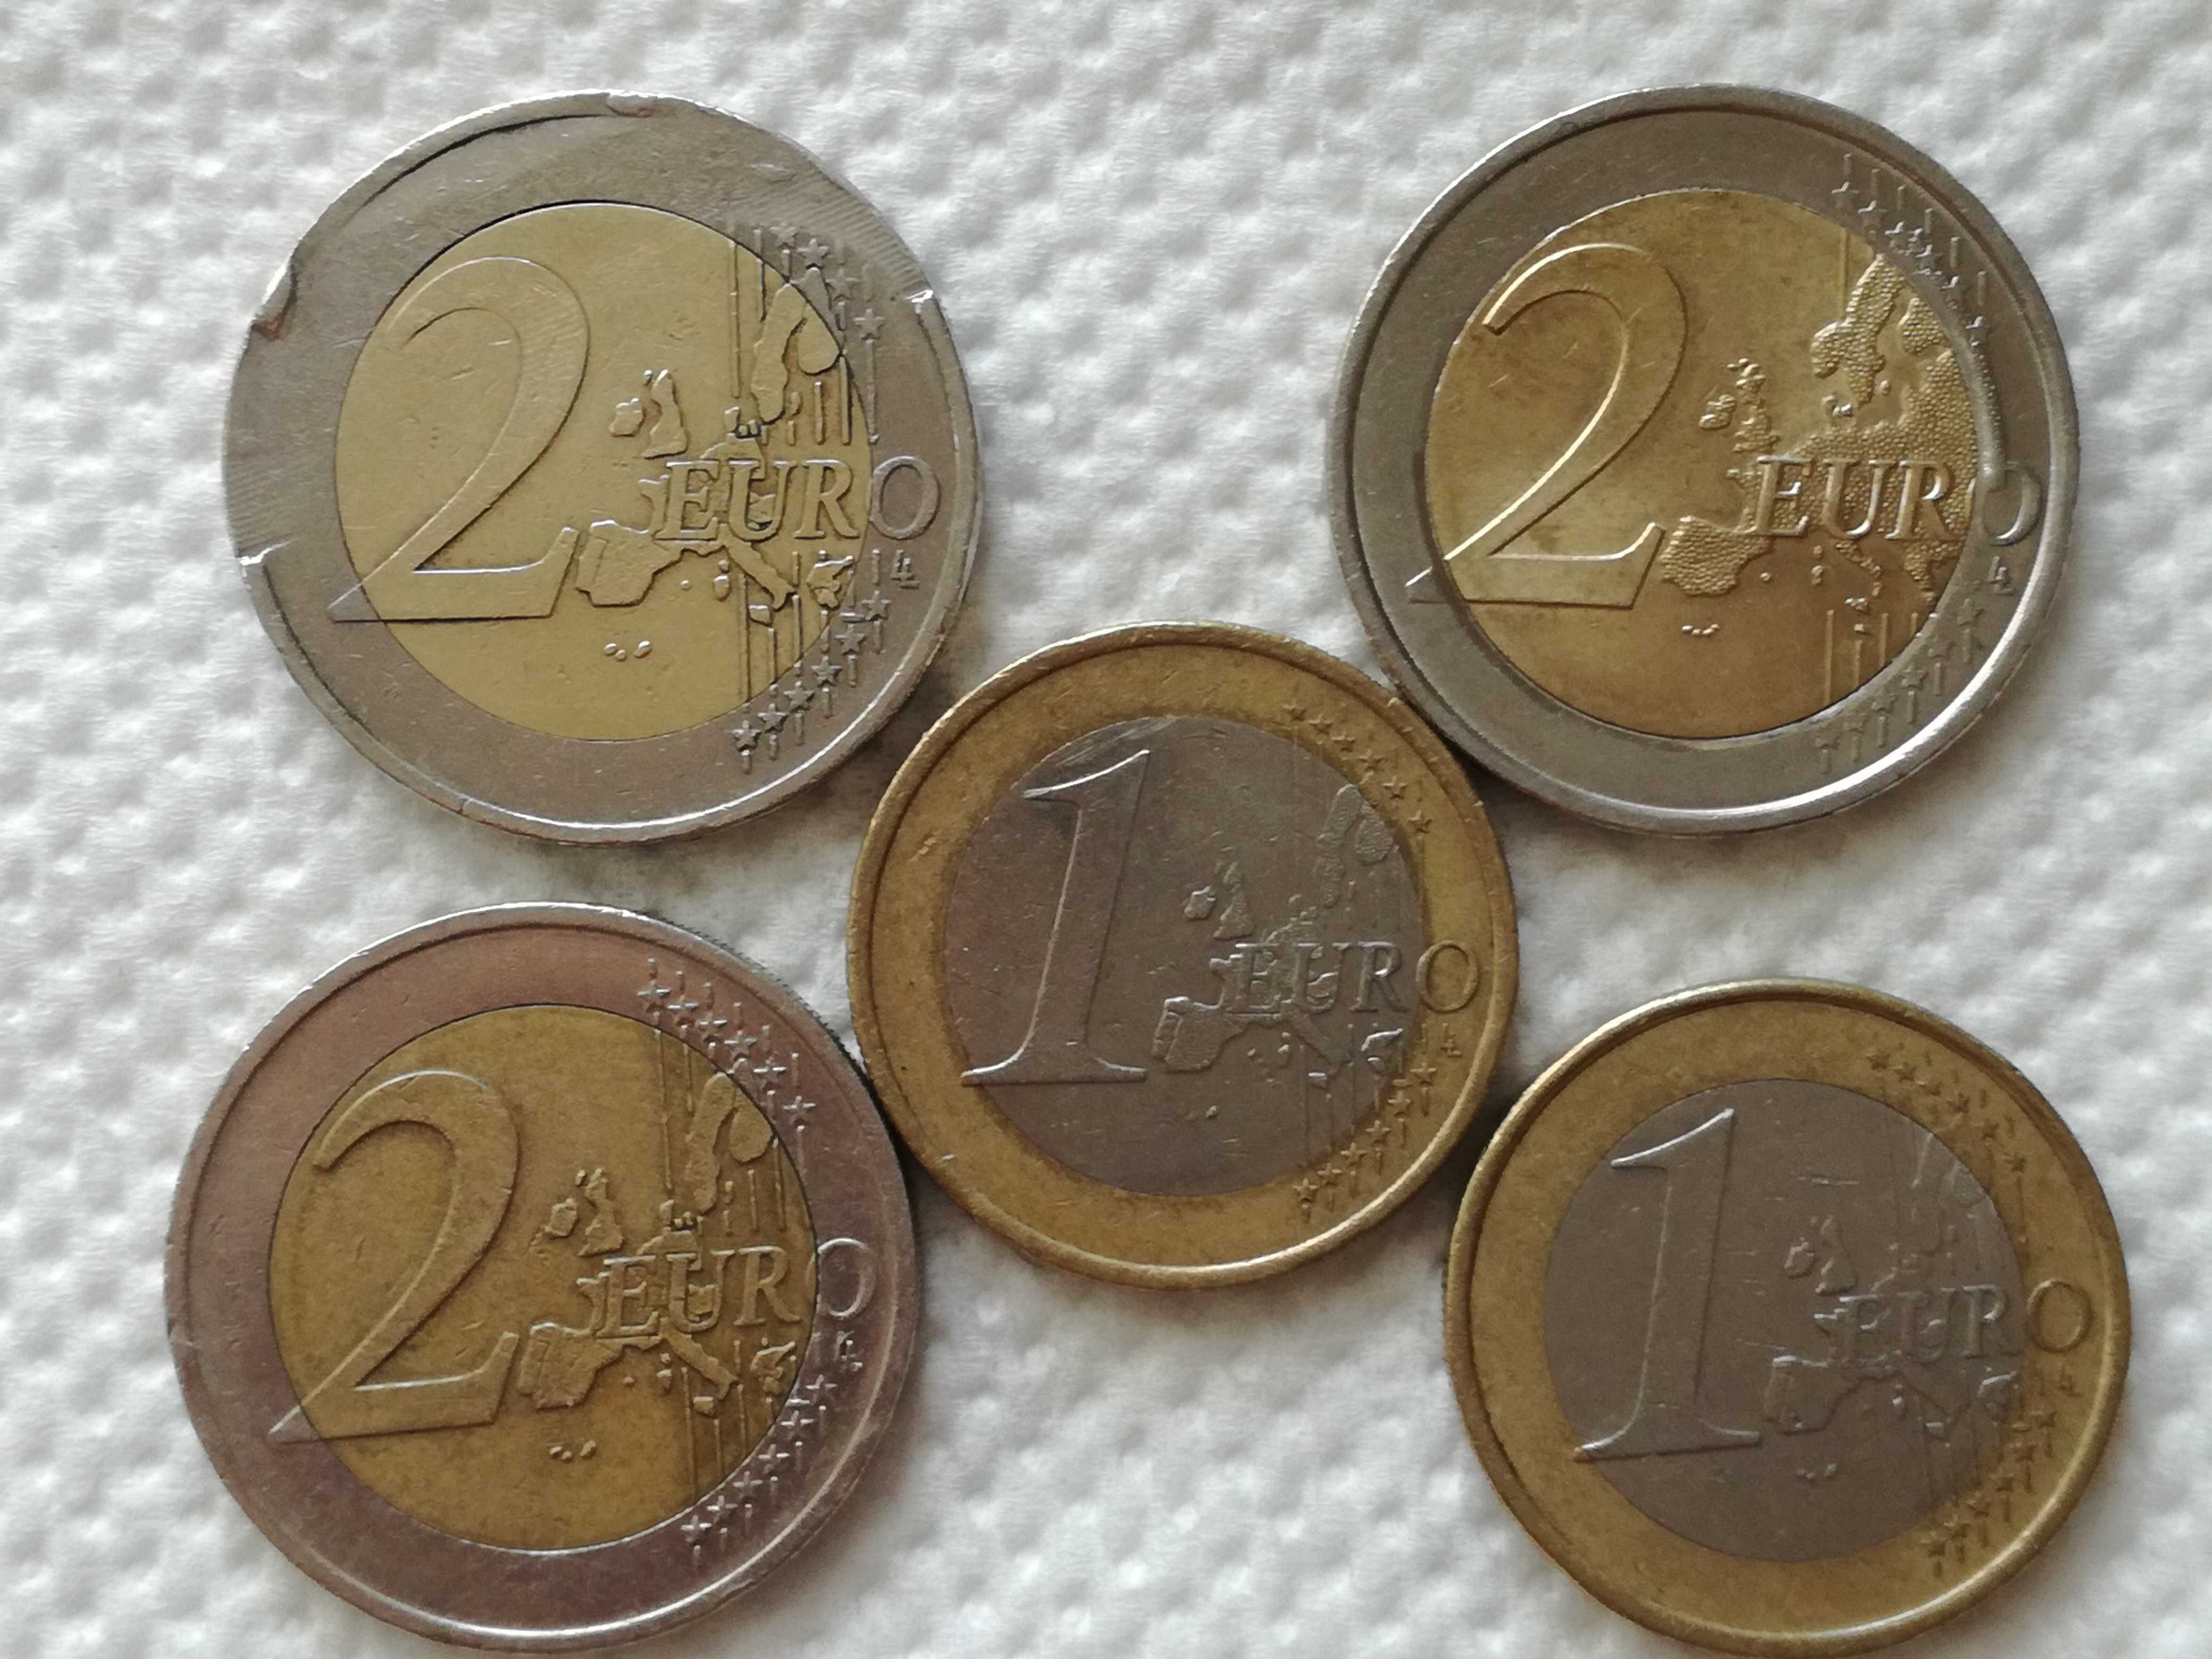 Vand monede rare de 2 euro 1 euro Germania cu eroare